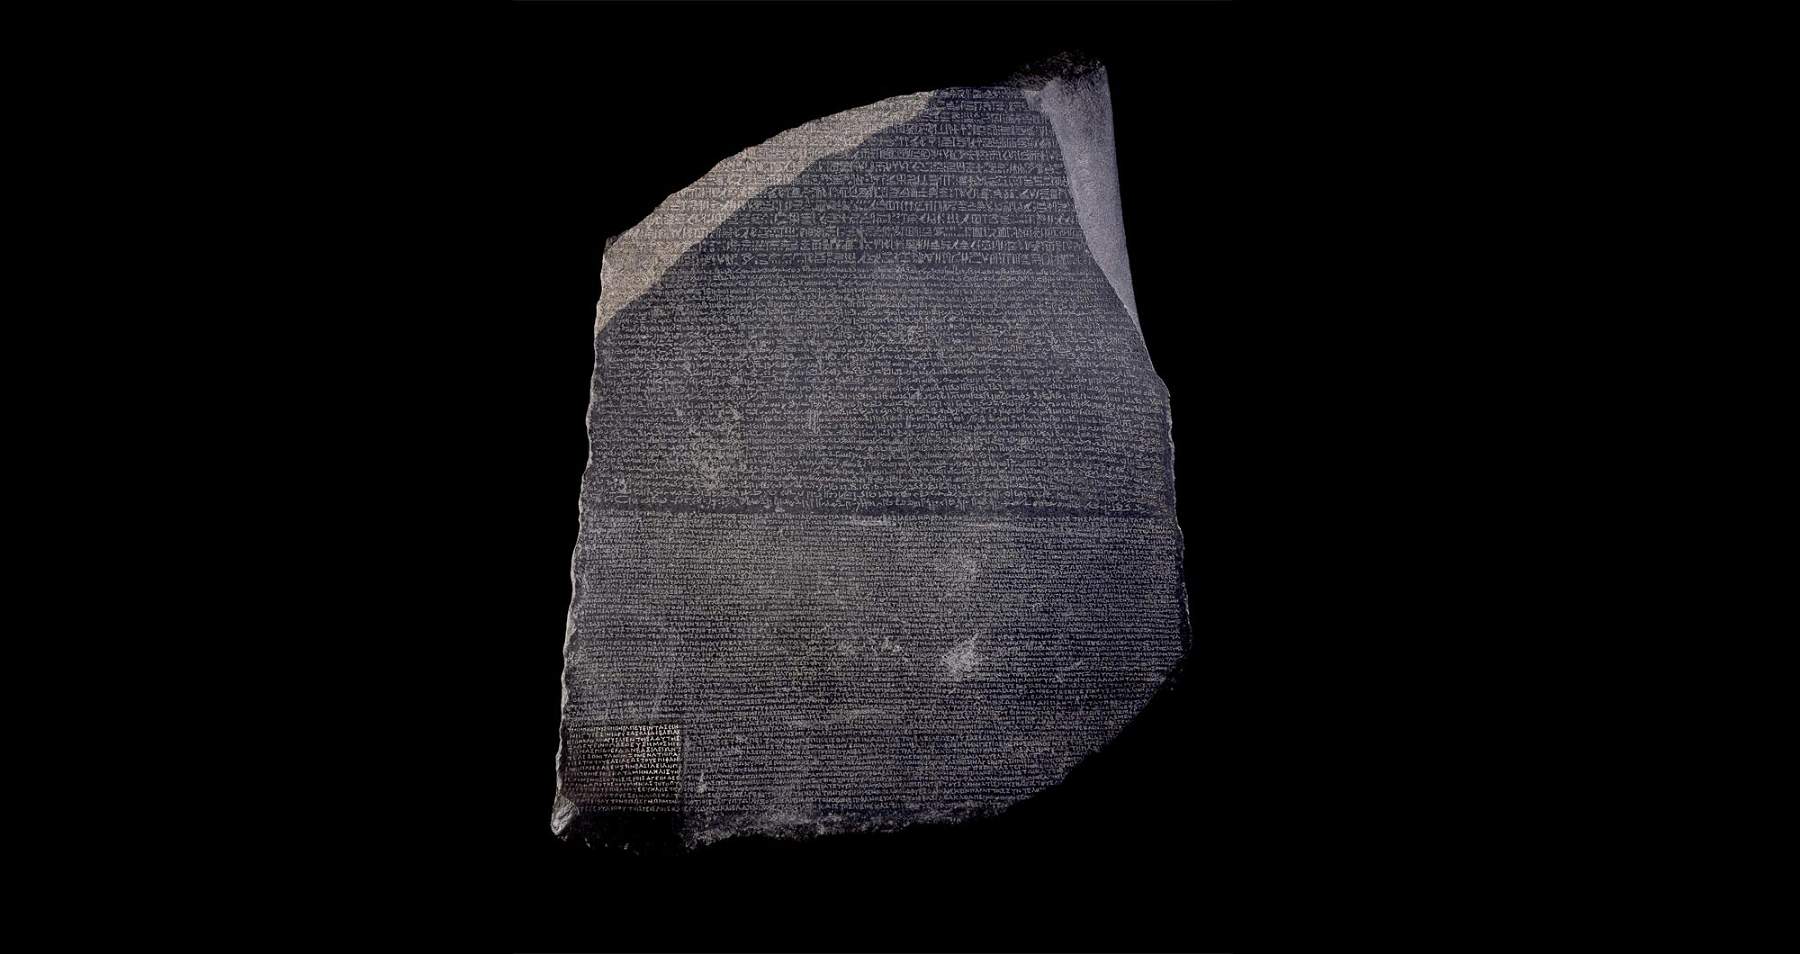 Egypt, archaeologist Zahi Hawass: British Museum to return Rosetta Stone to us.